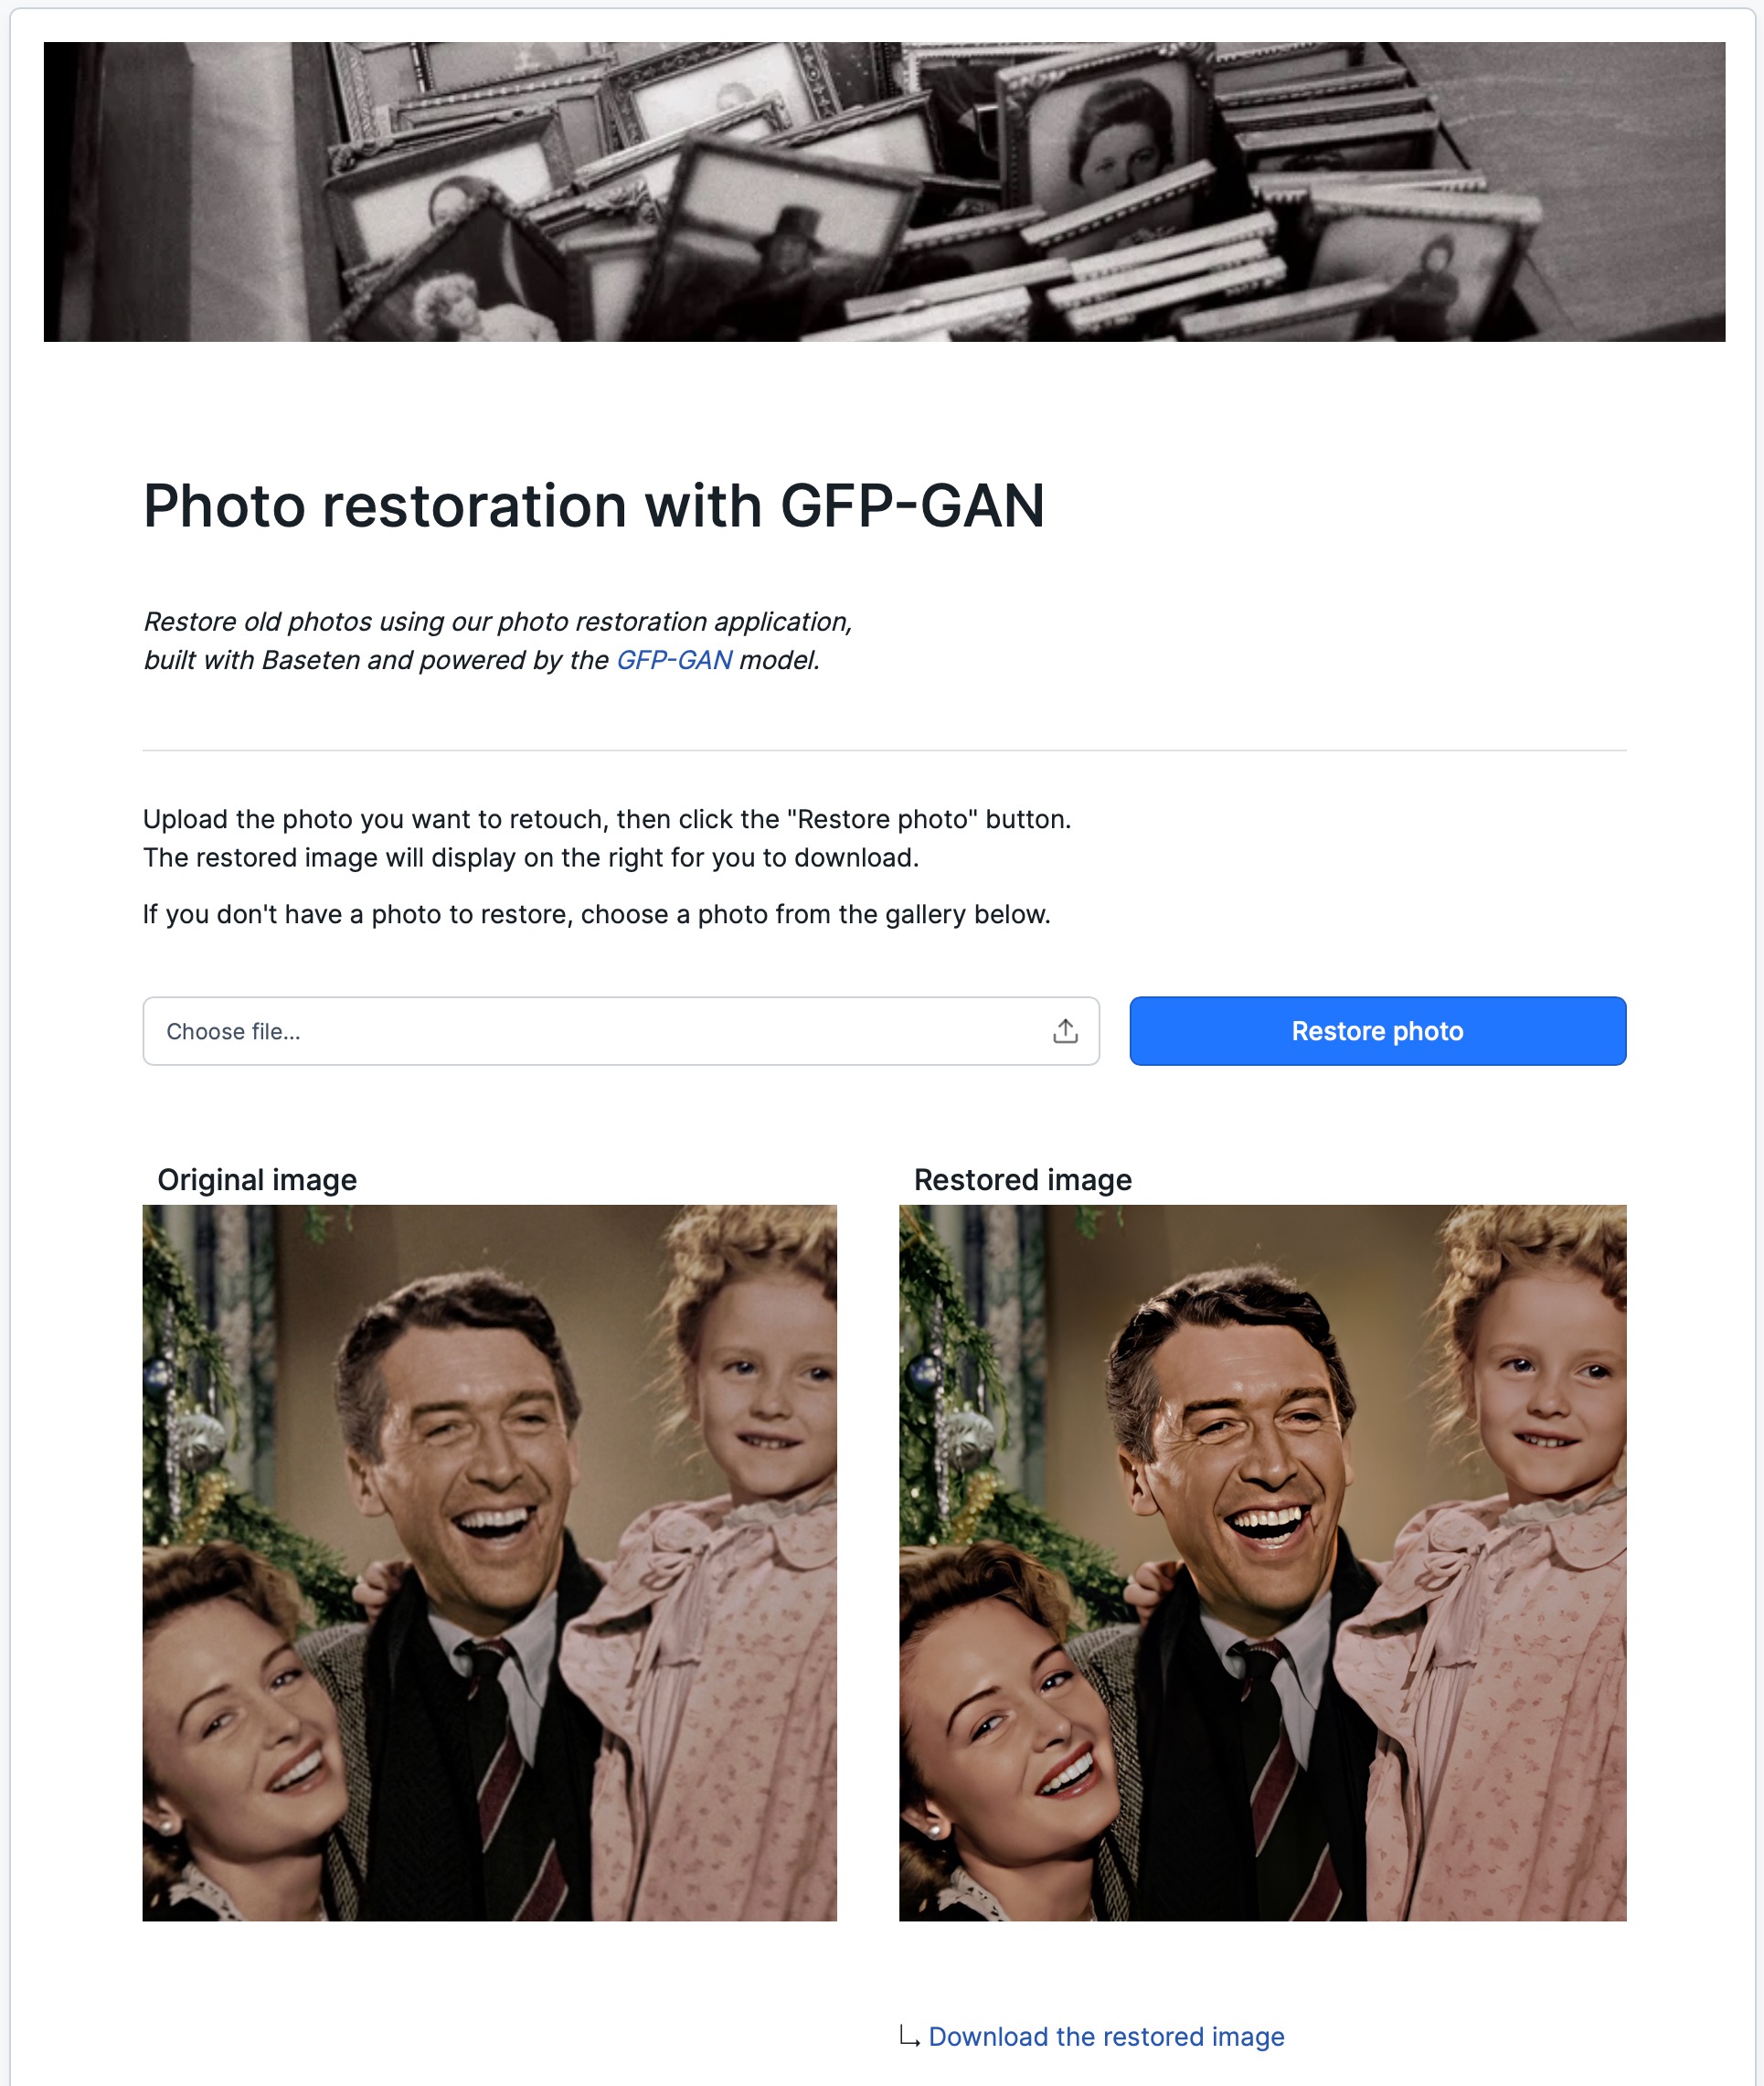 Die Web-App zu GFP-GAN ist einfach und übersichtlich: Foto hochladen, auf "Restore photo" klicken und dann das fertig verbesserte Bild über den Link unter der Ergebnisvorschau herunterladen.